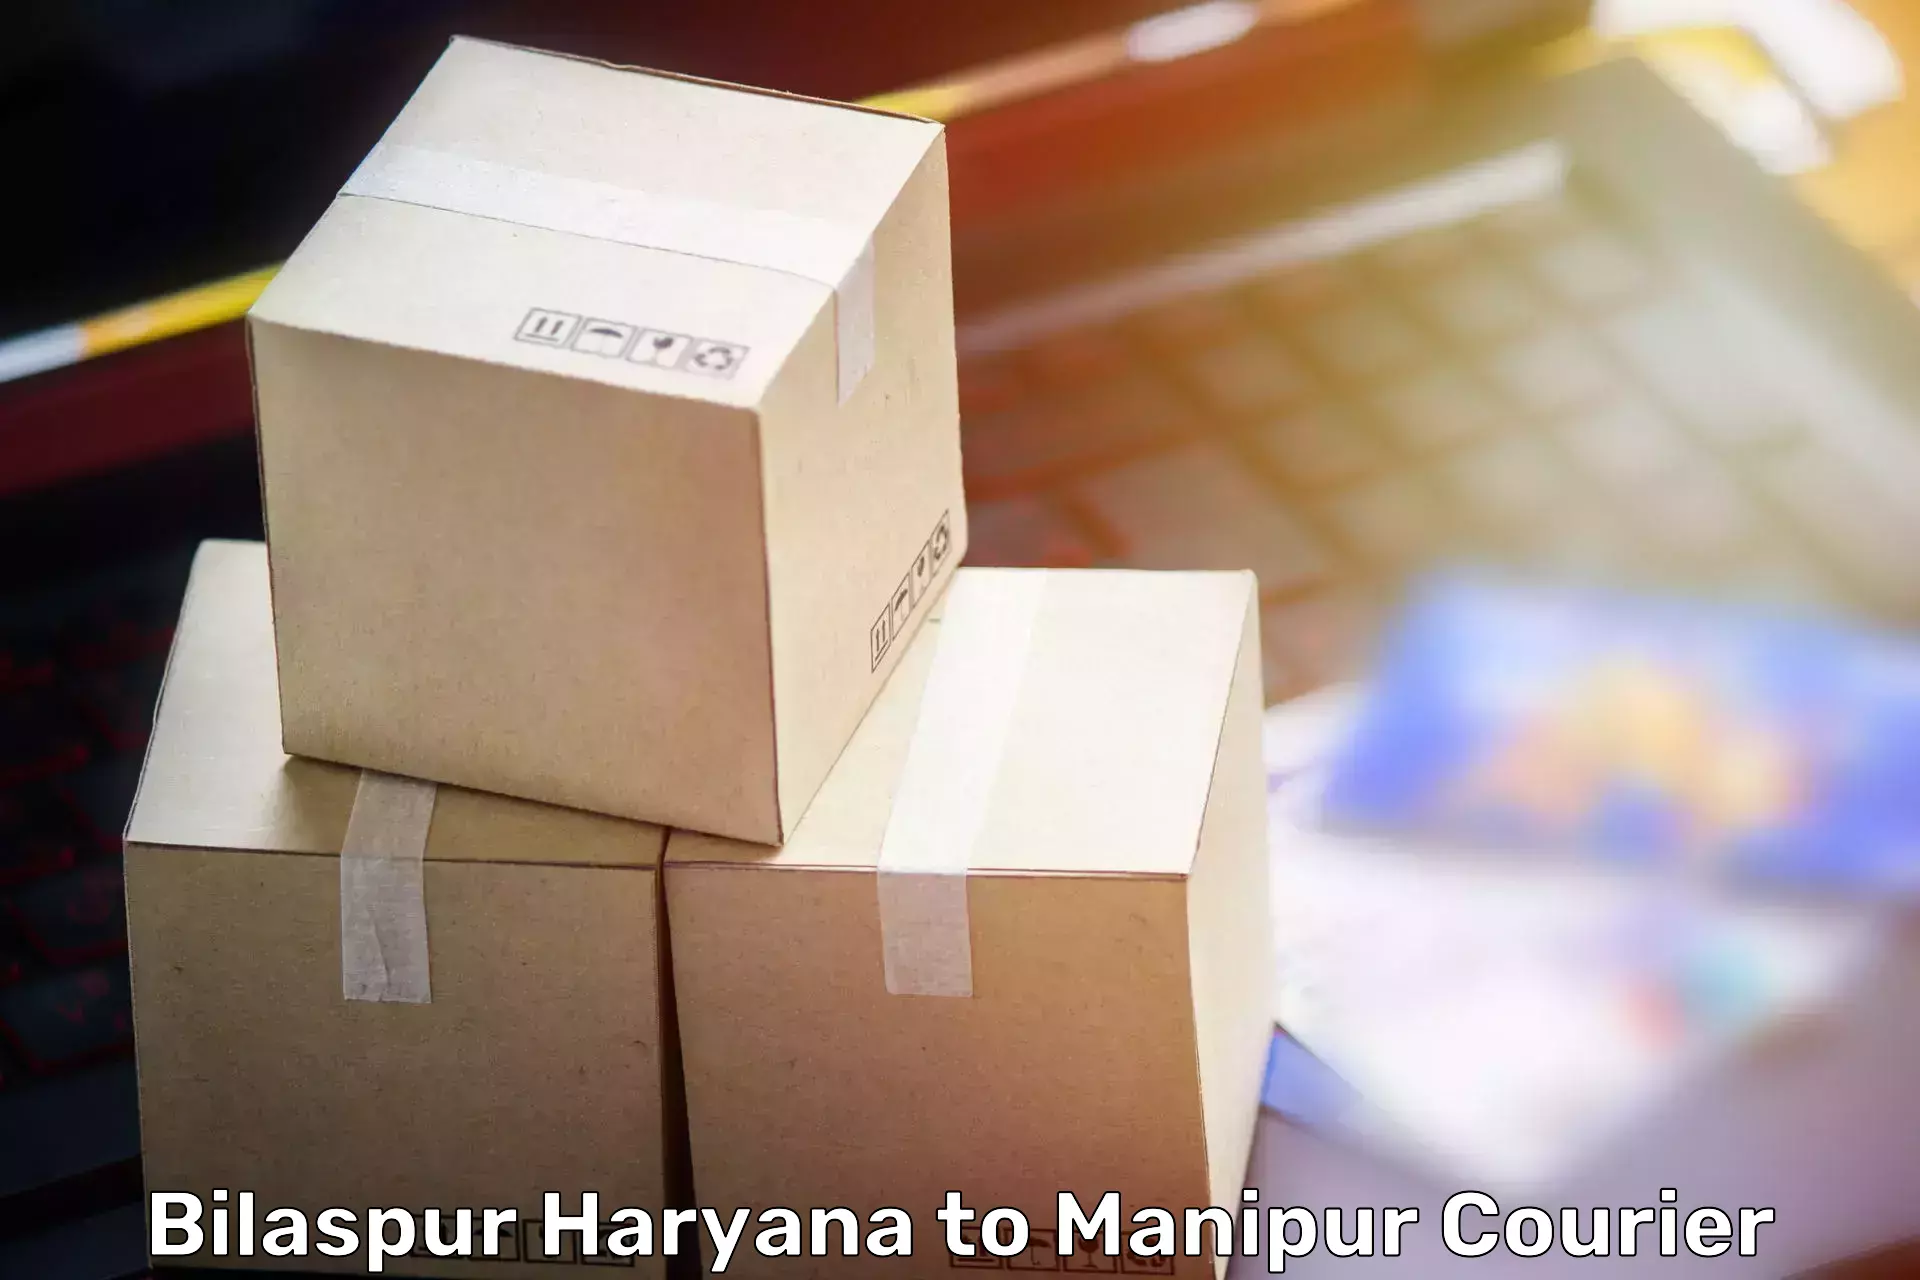 Furniture moving experts Bilaspur Haryana to Manipur